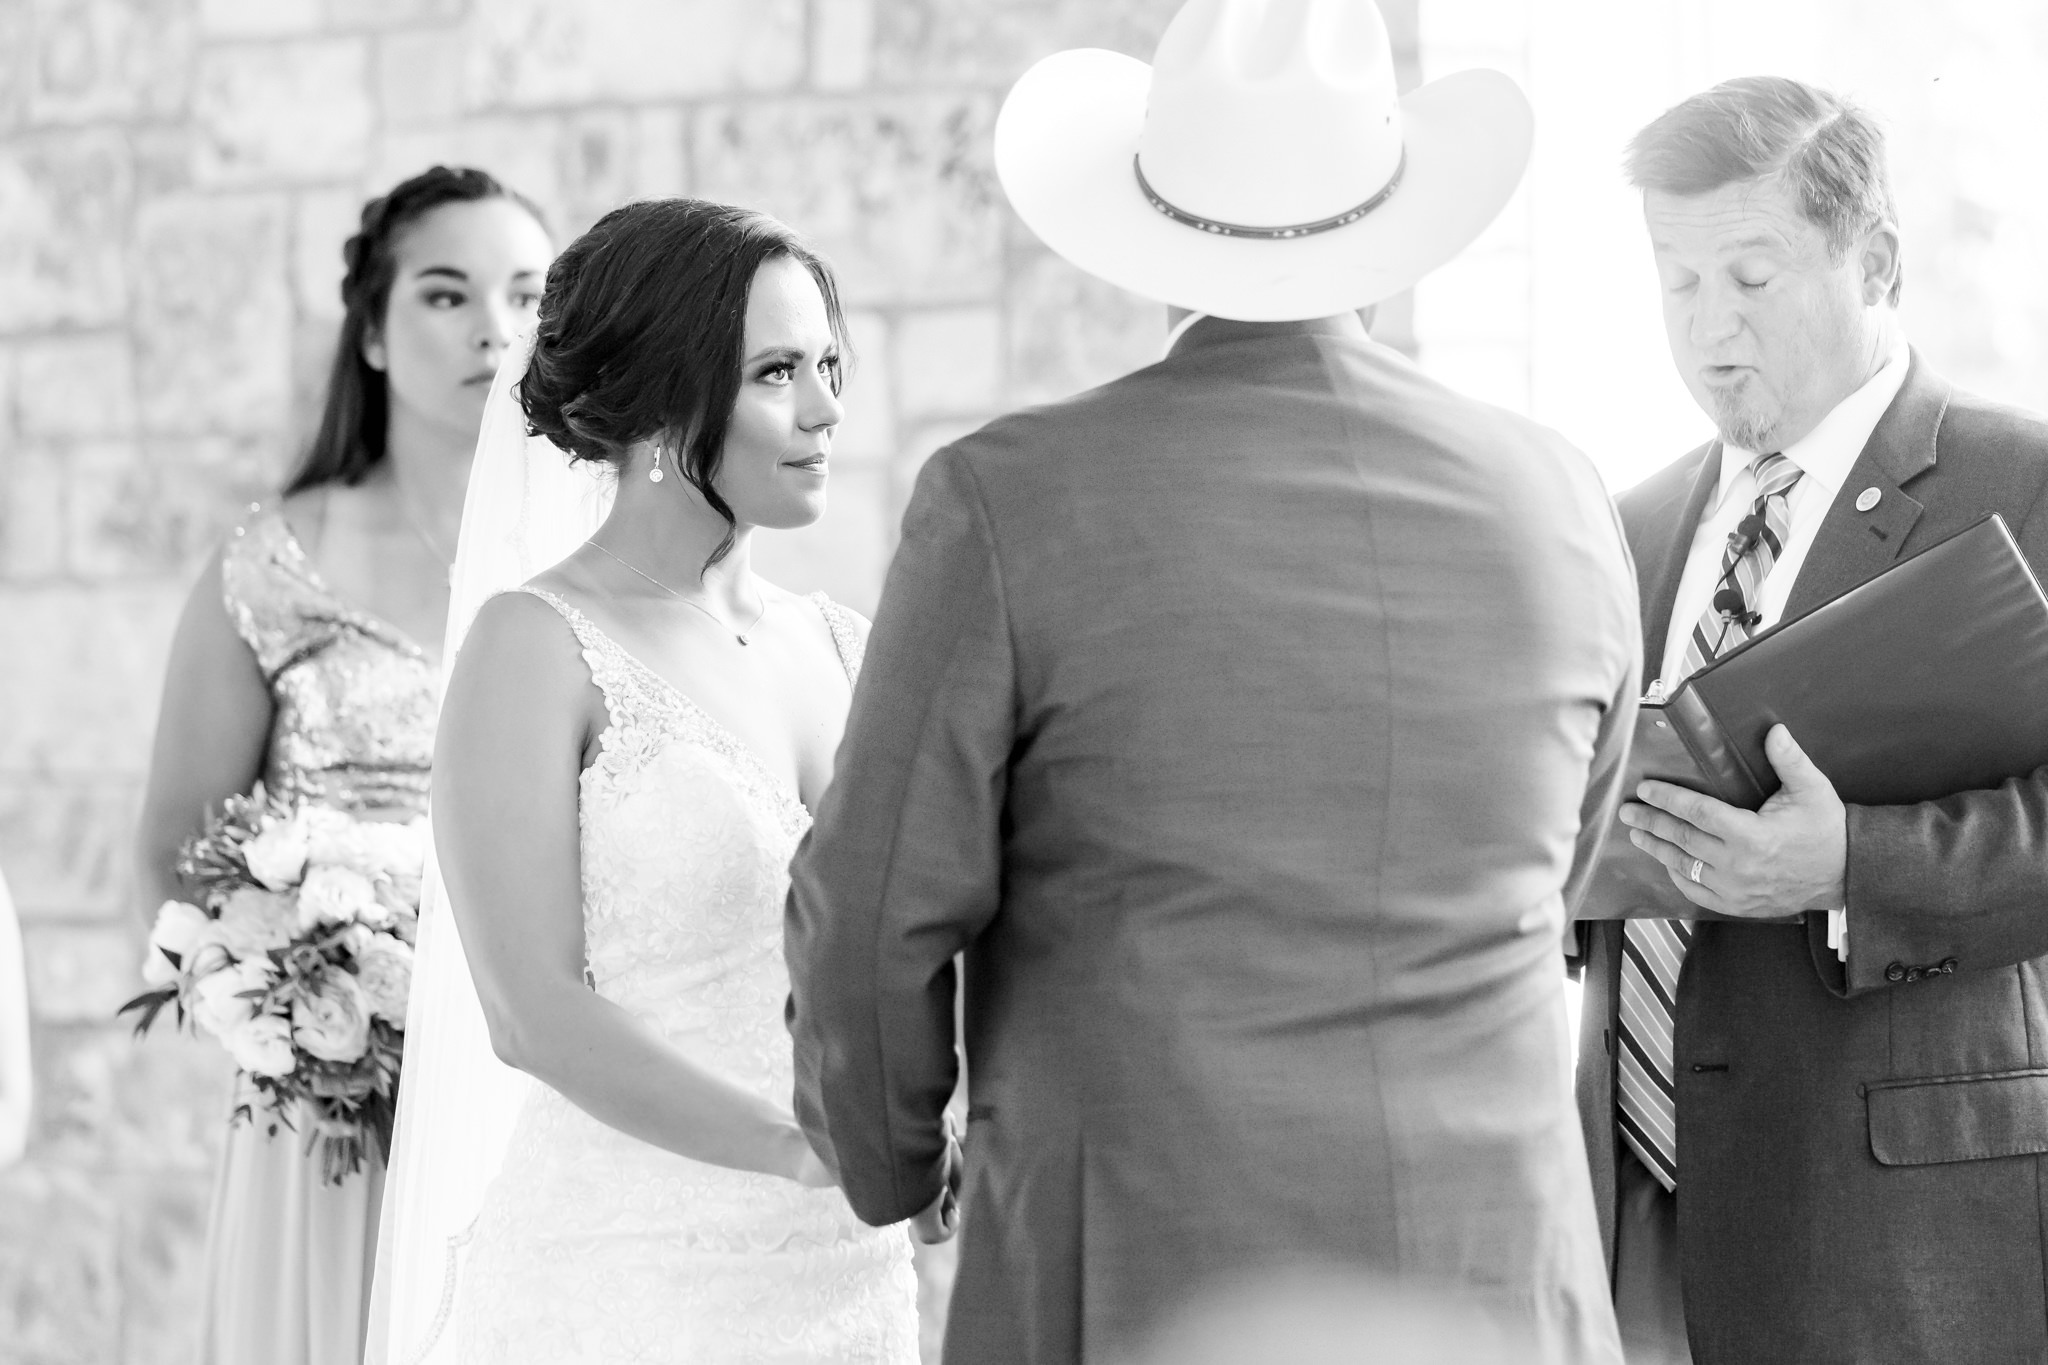 A Dusty Pink and Coral Wedding at Chandelier of Gruene in New Braunfels, TX by Dawn Elizabeth Studios, New Braunfels Wedding Photographer